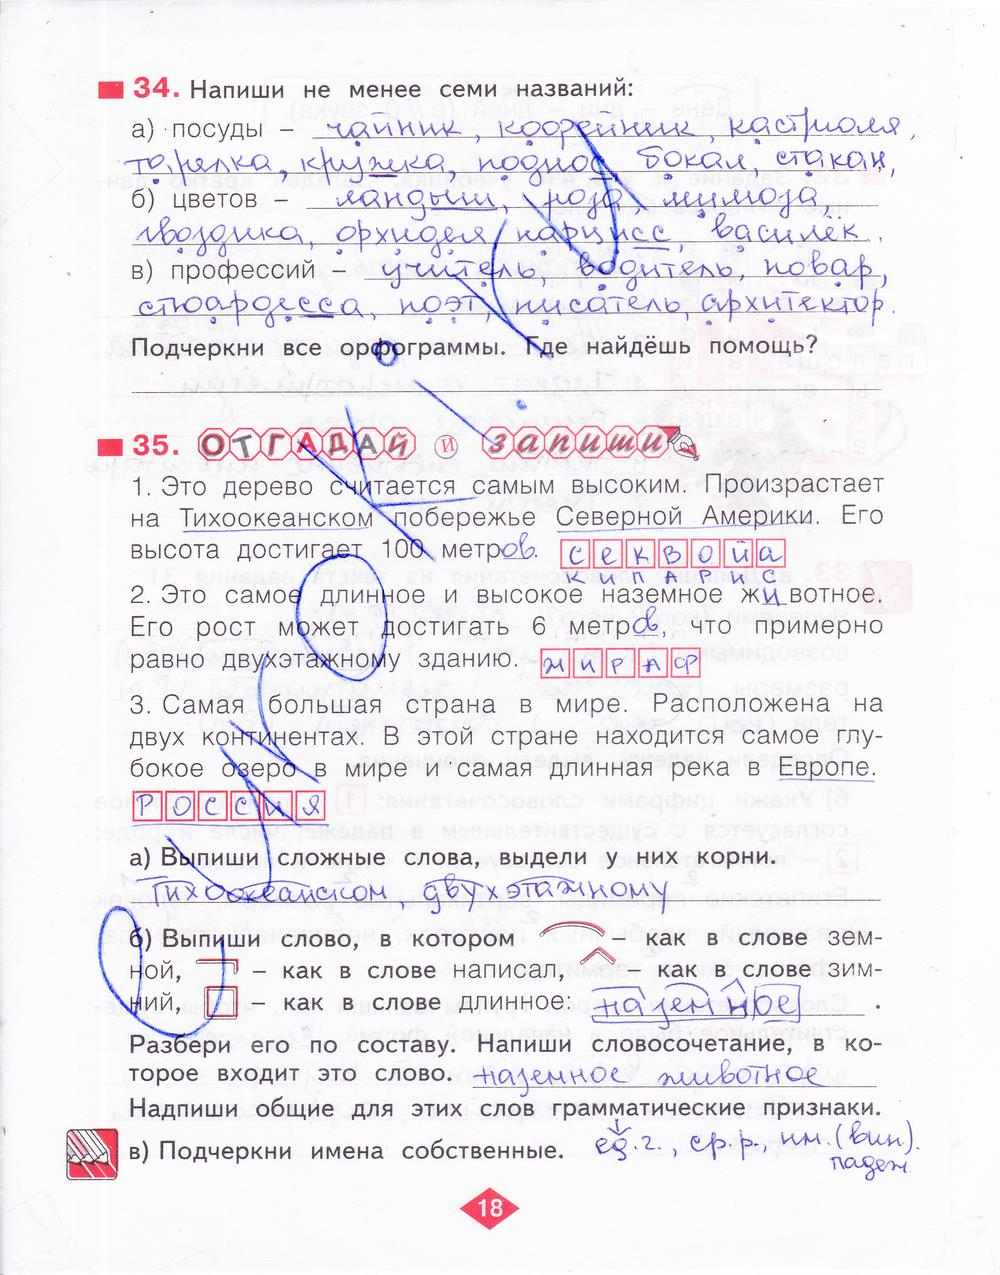 гдз 3 класс рабочая тетрадь часть 4 страница 18 русский язык Нечаева, Воскресенская